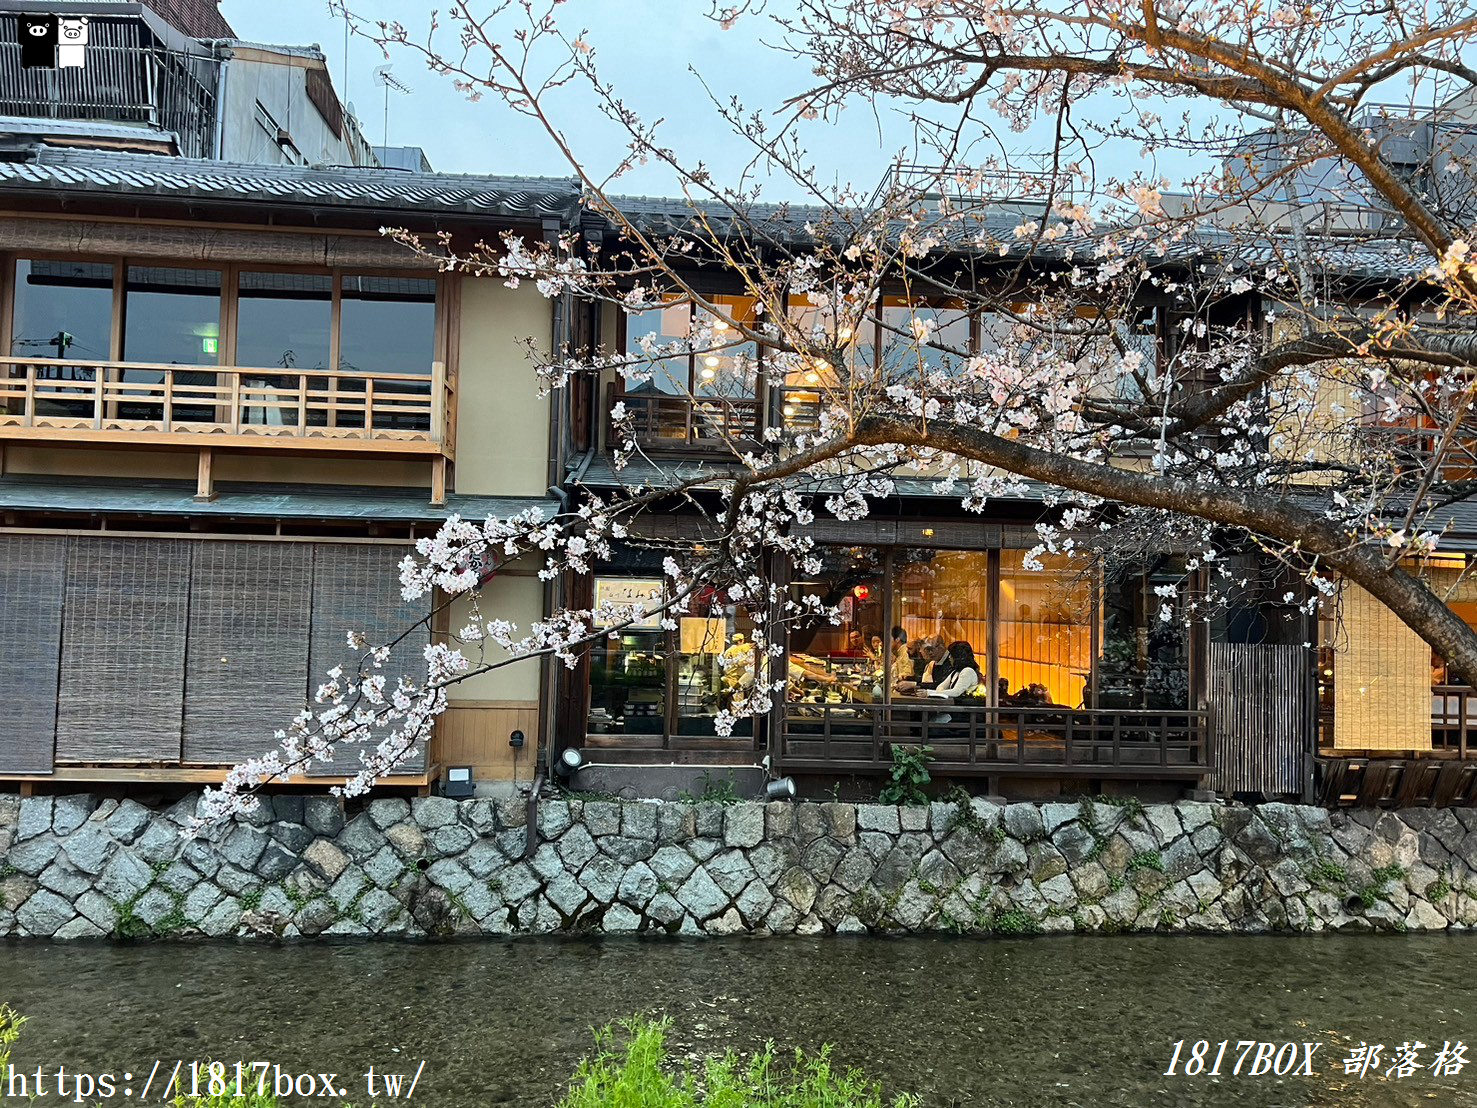 【京都景點】祇園白川筋。小橋流水。古色古香的町家建築